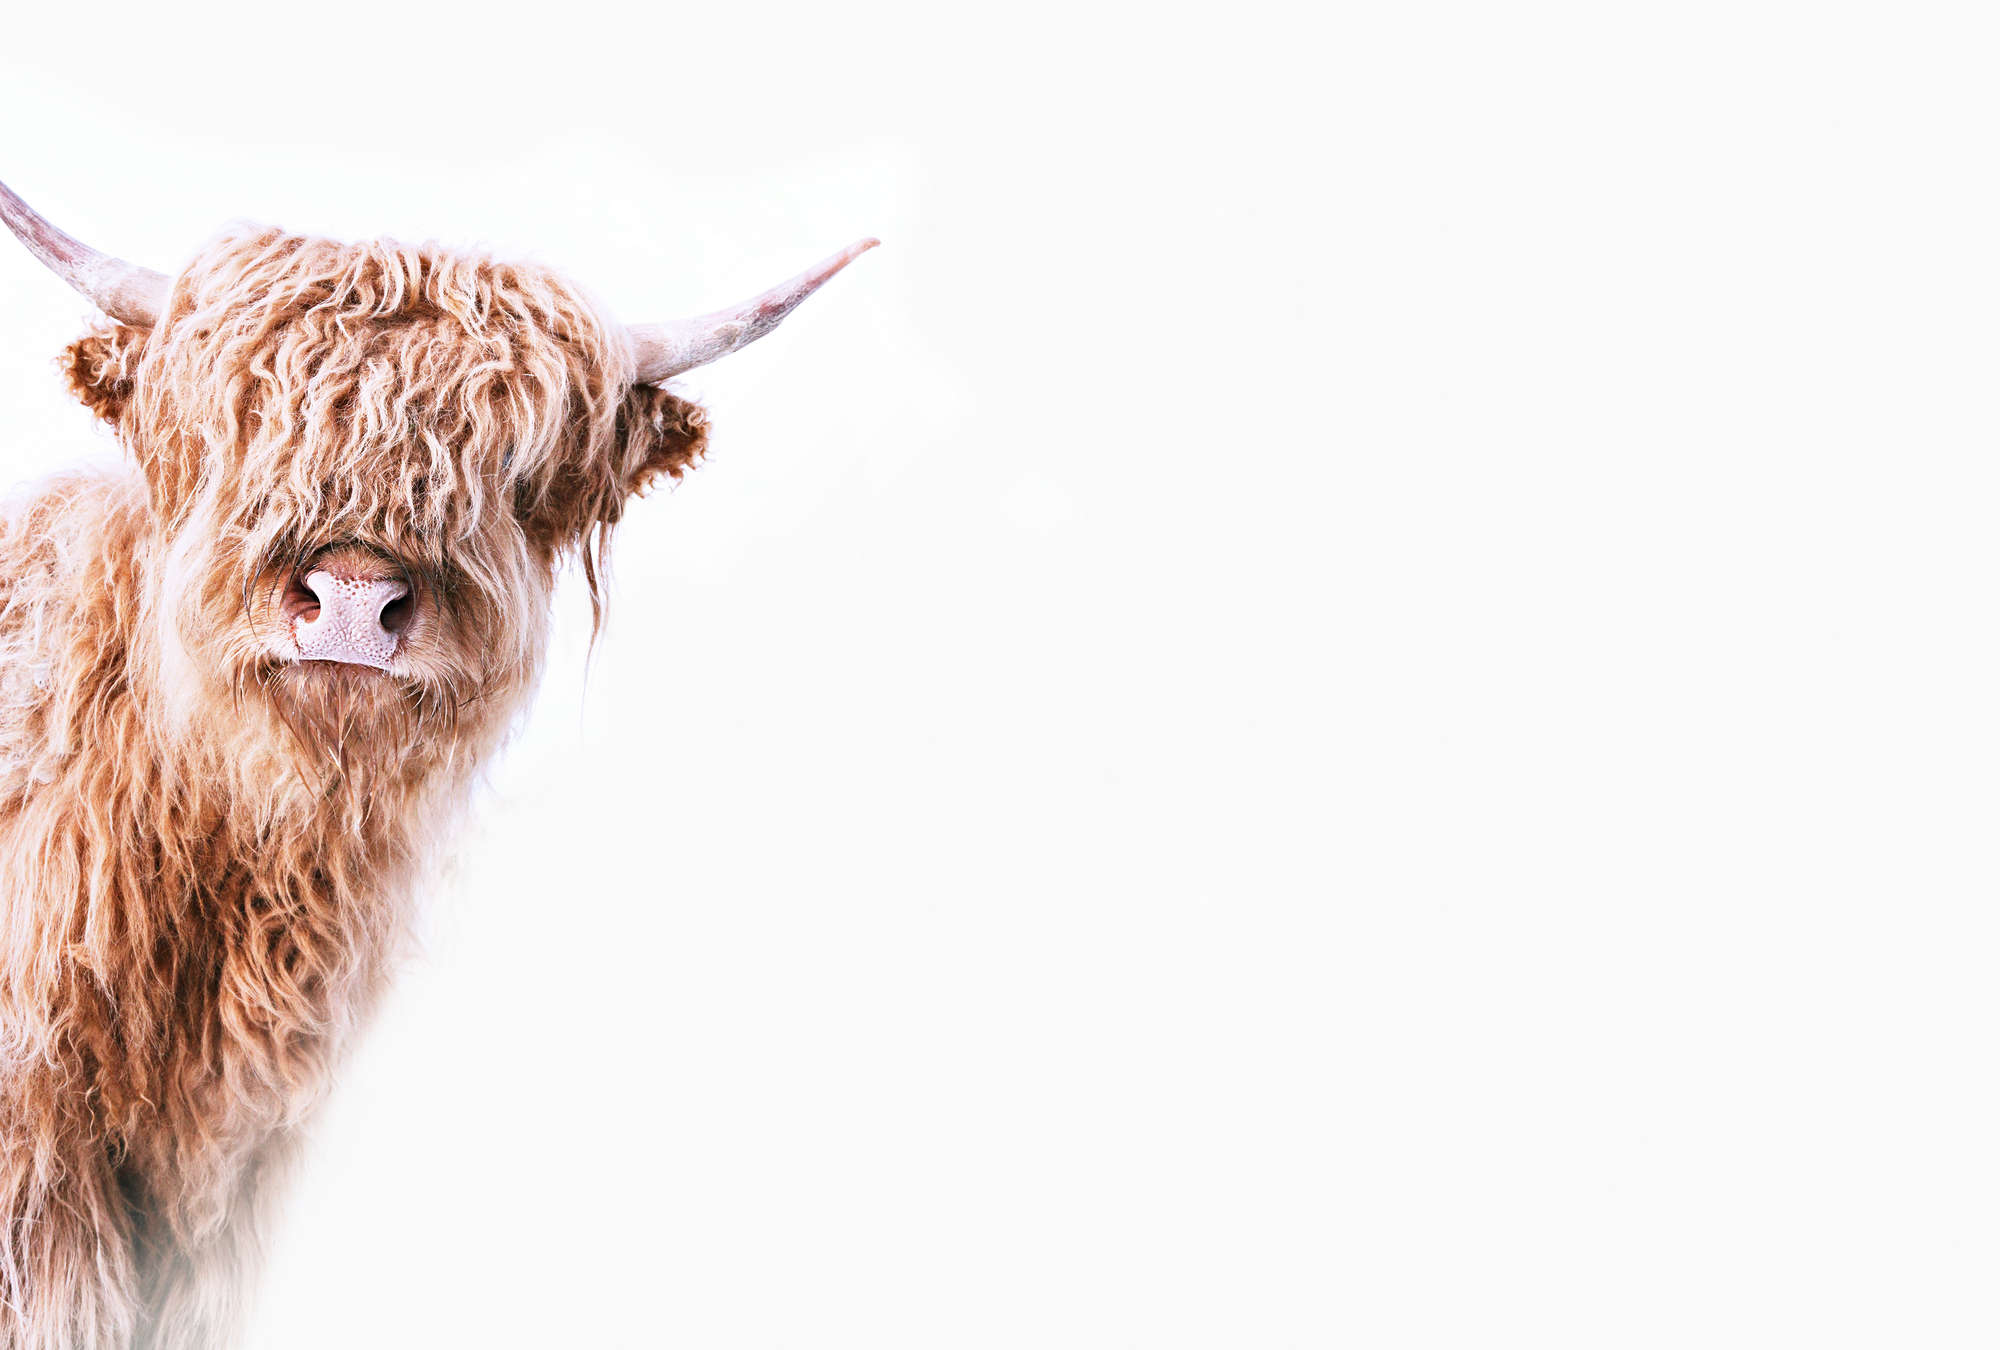             Fotomurali di animali con bovini delle Highlands dall'aspetto arruffato
        